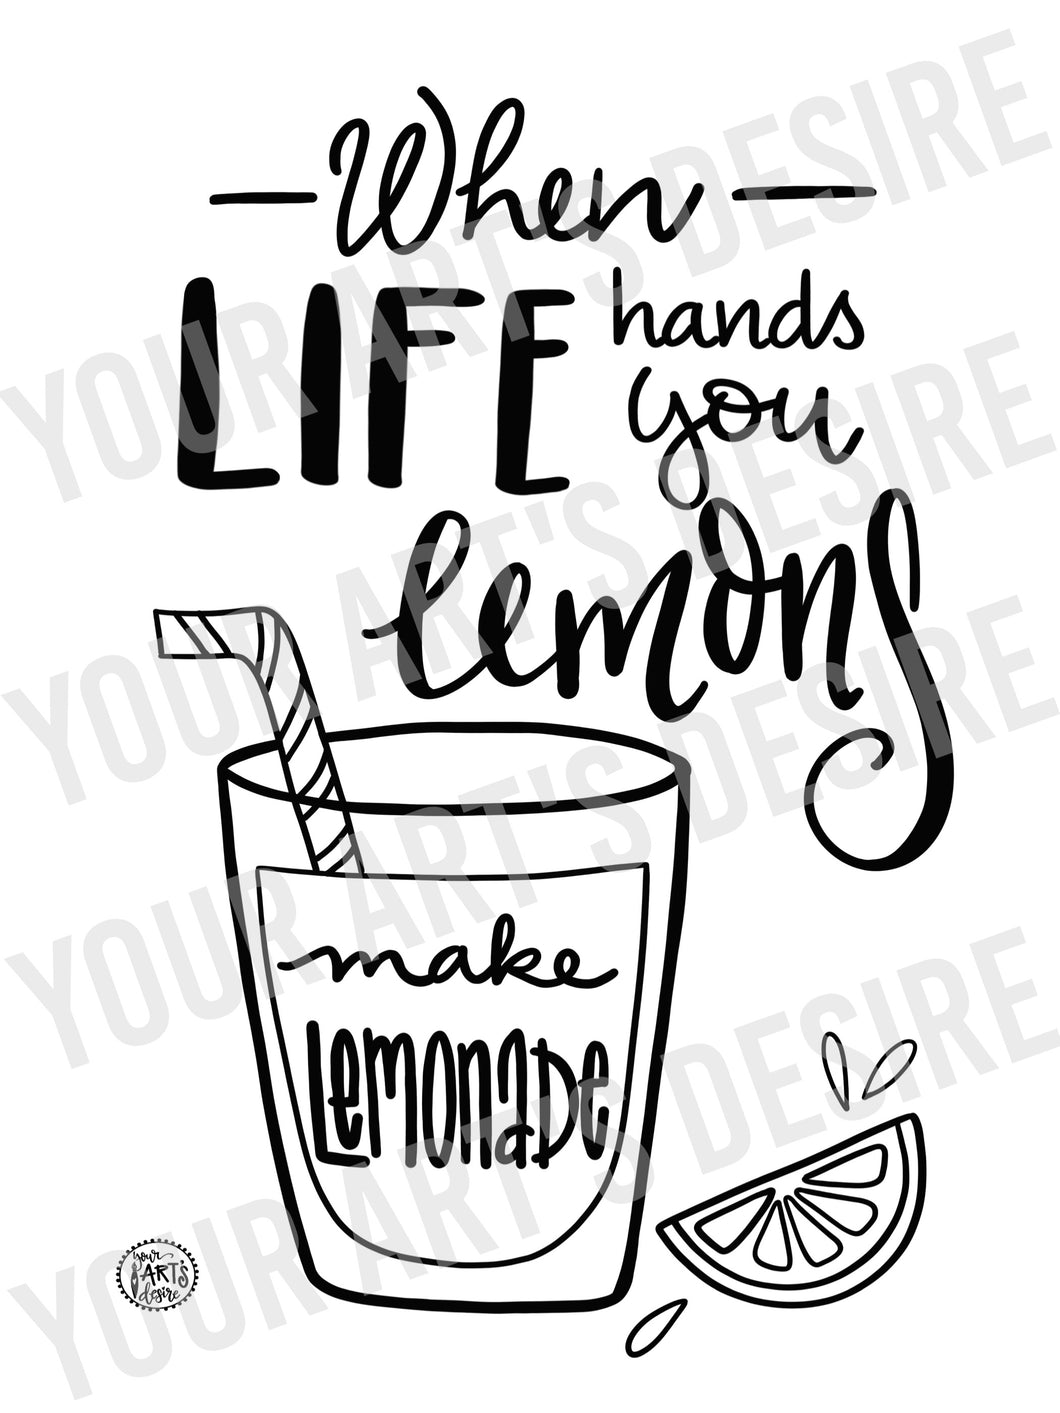 Make Lemonade